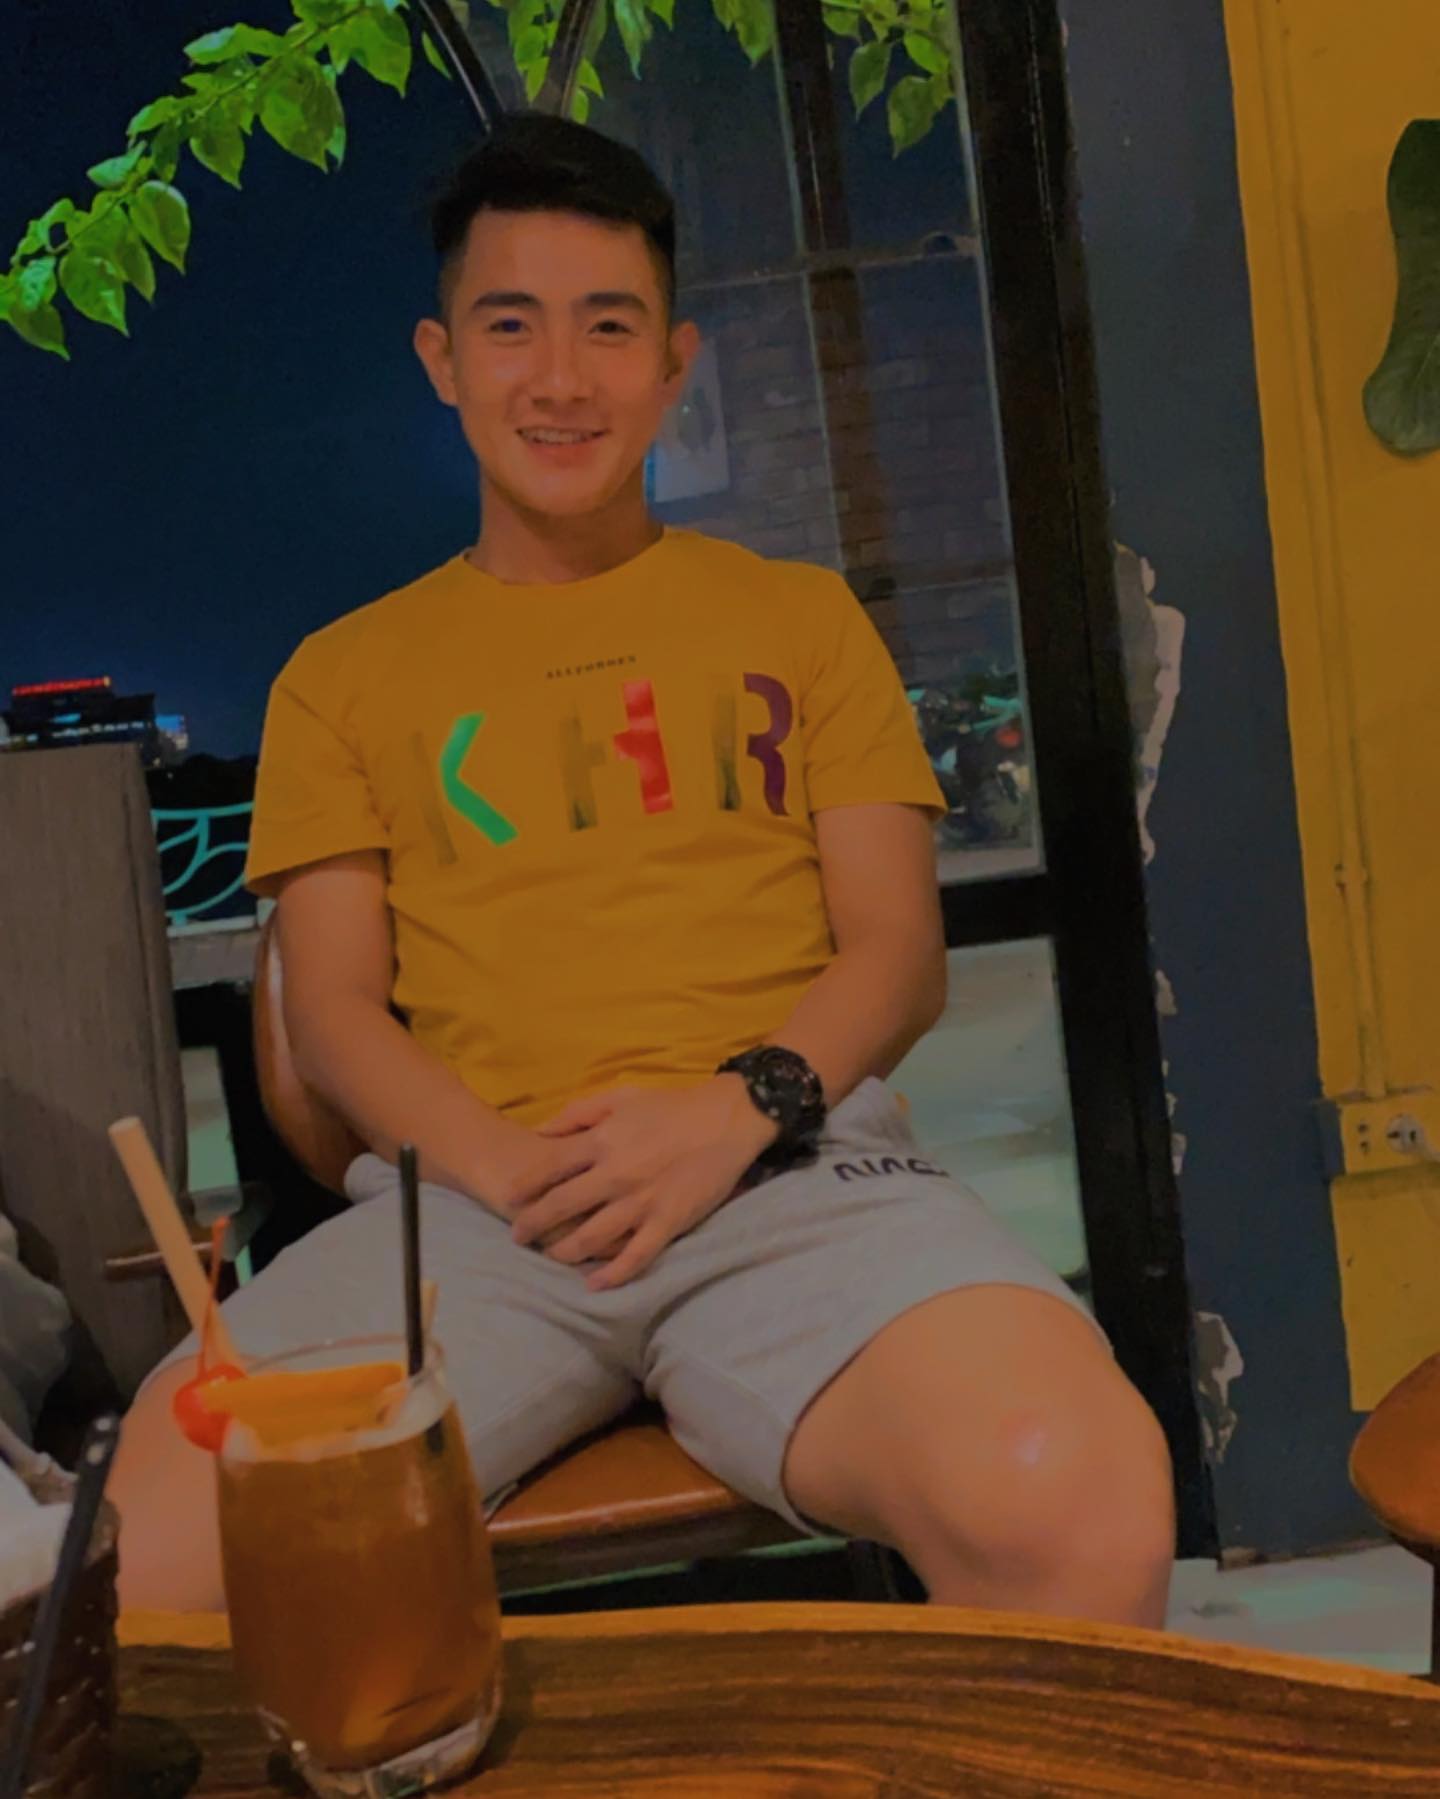 Visual mới của U23 Việt Nam đang đại náo TikTok: Hotboy sinh năm 2k1, cười cái là lịm tim - Ảnh 5.